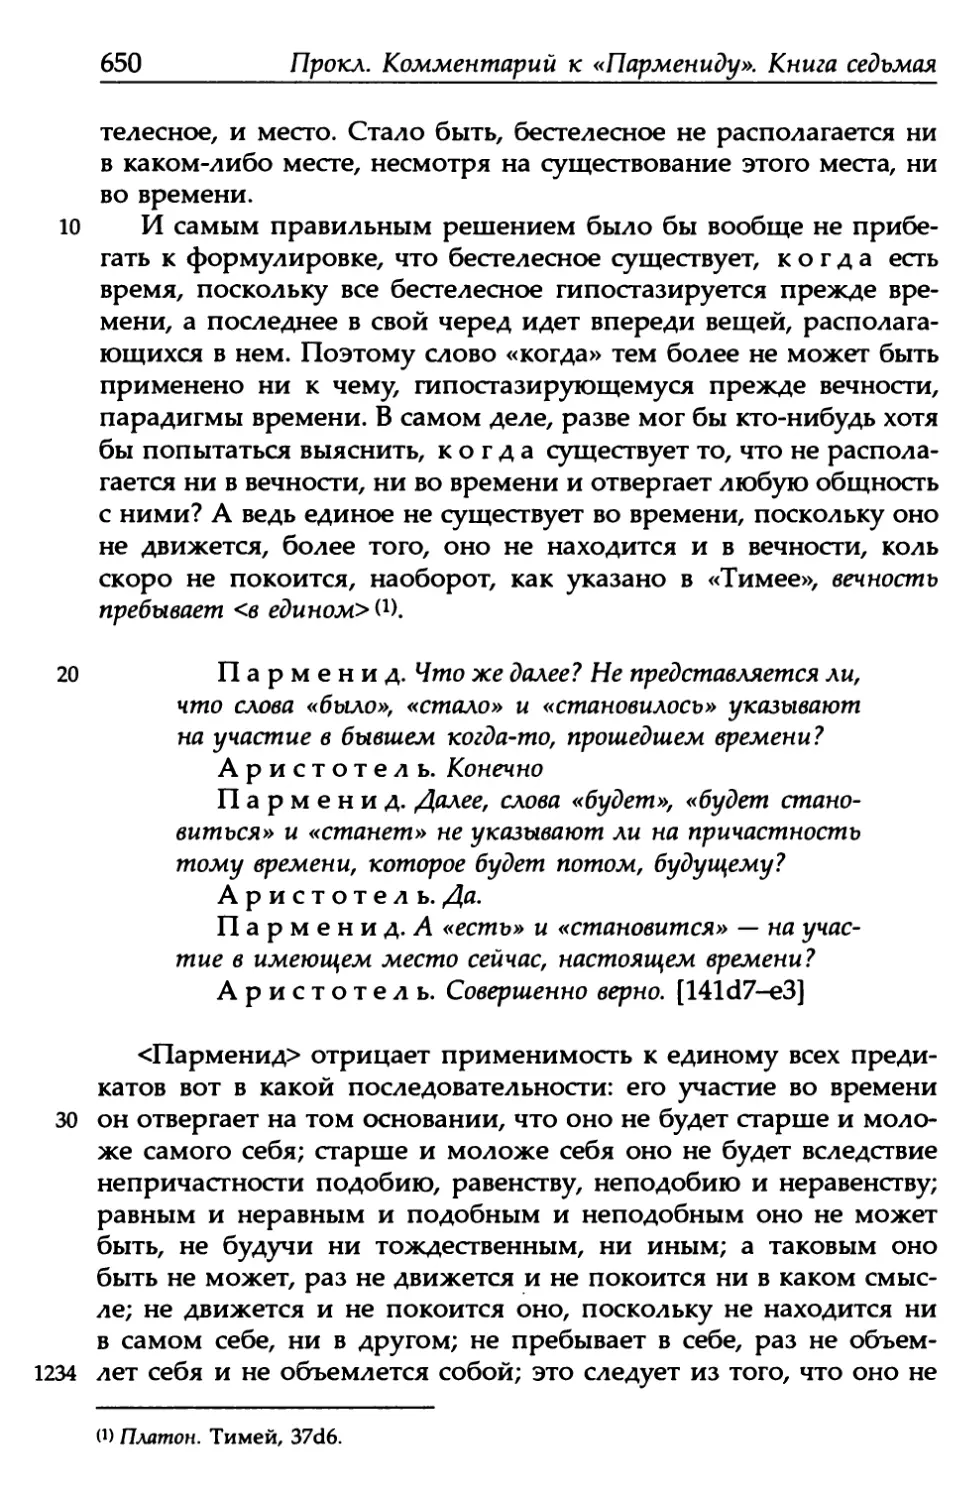 «Парменид», 141d7-e3